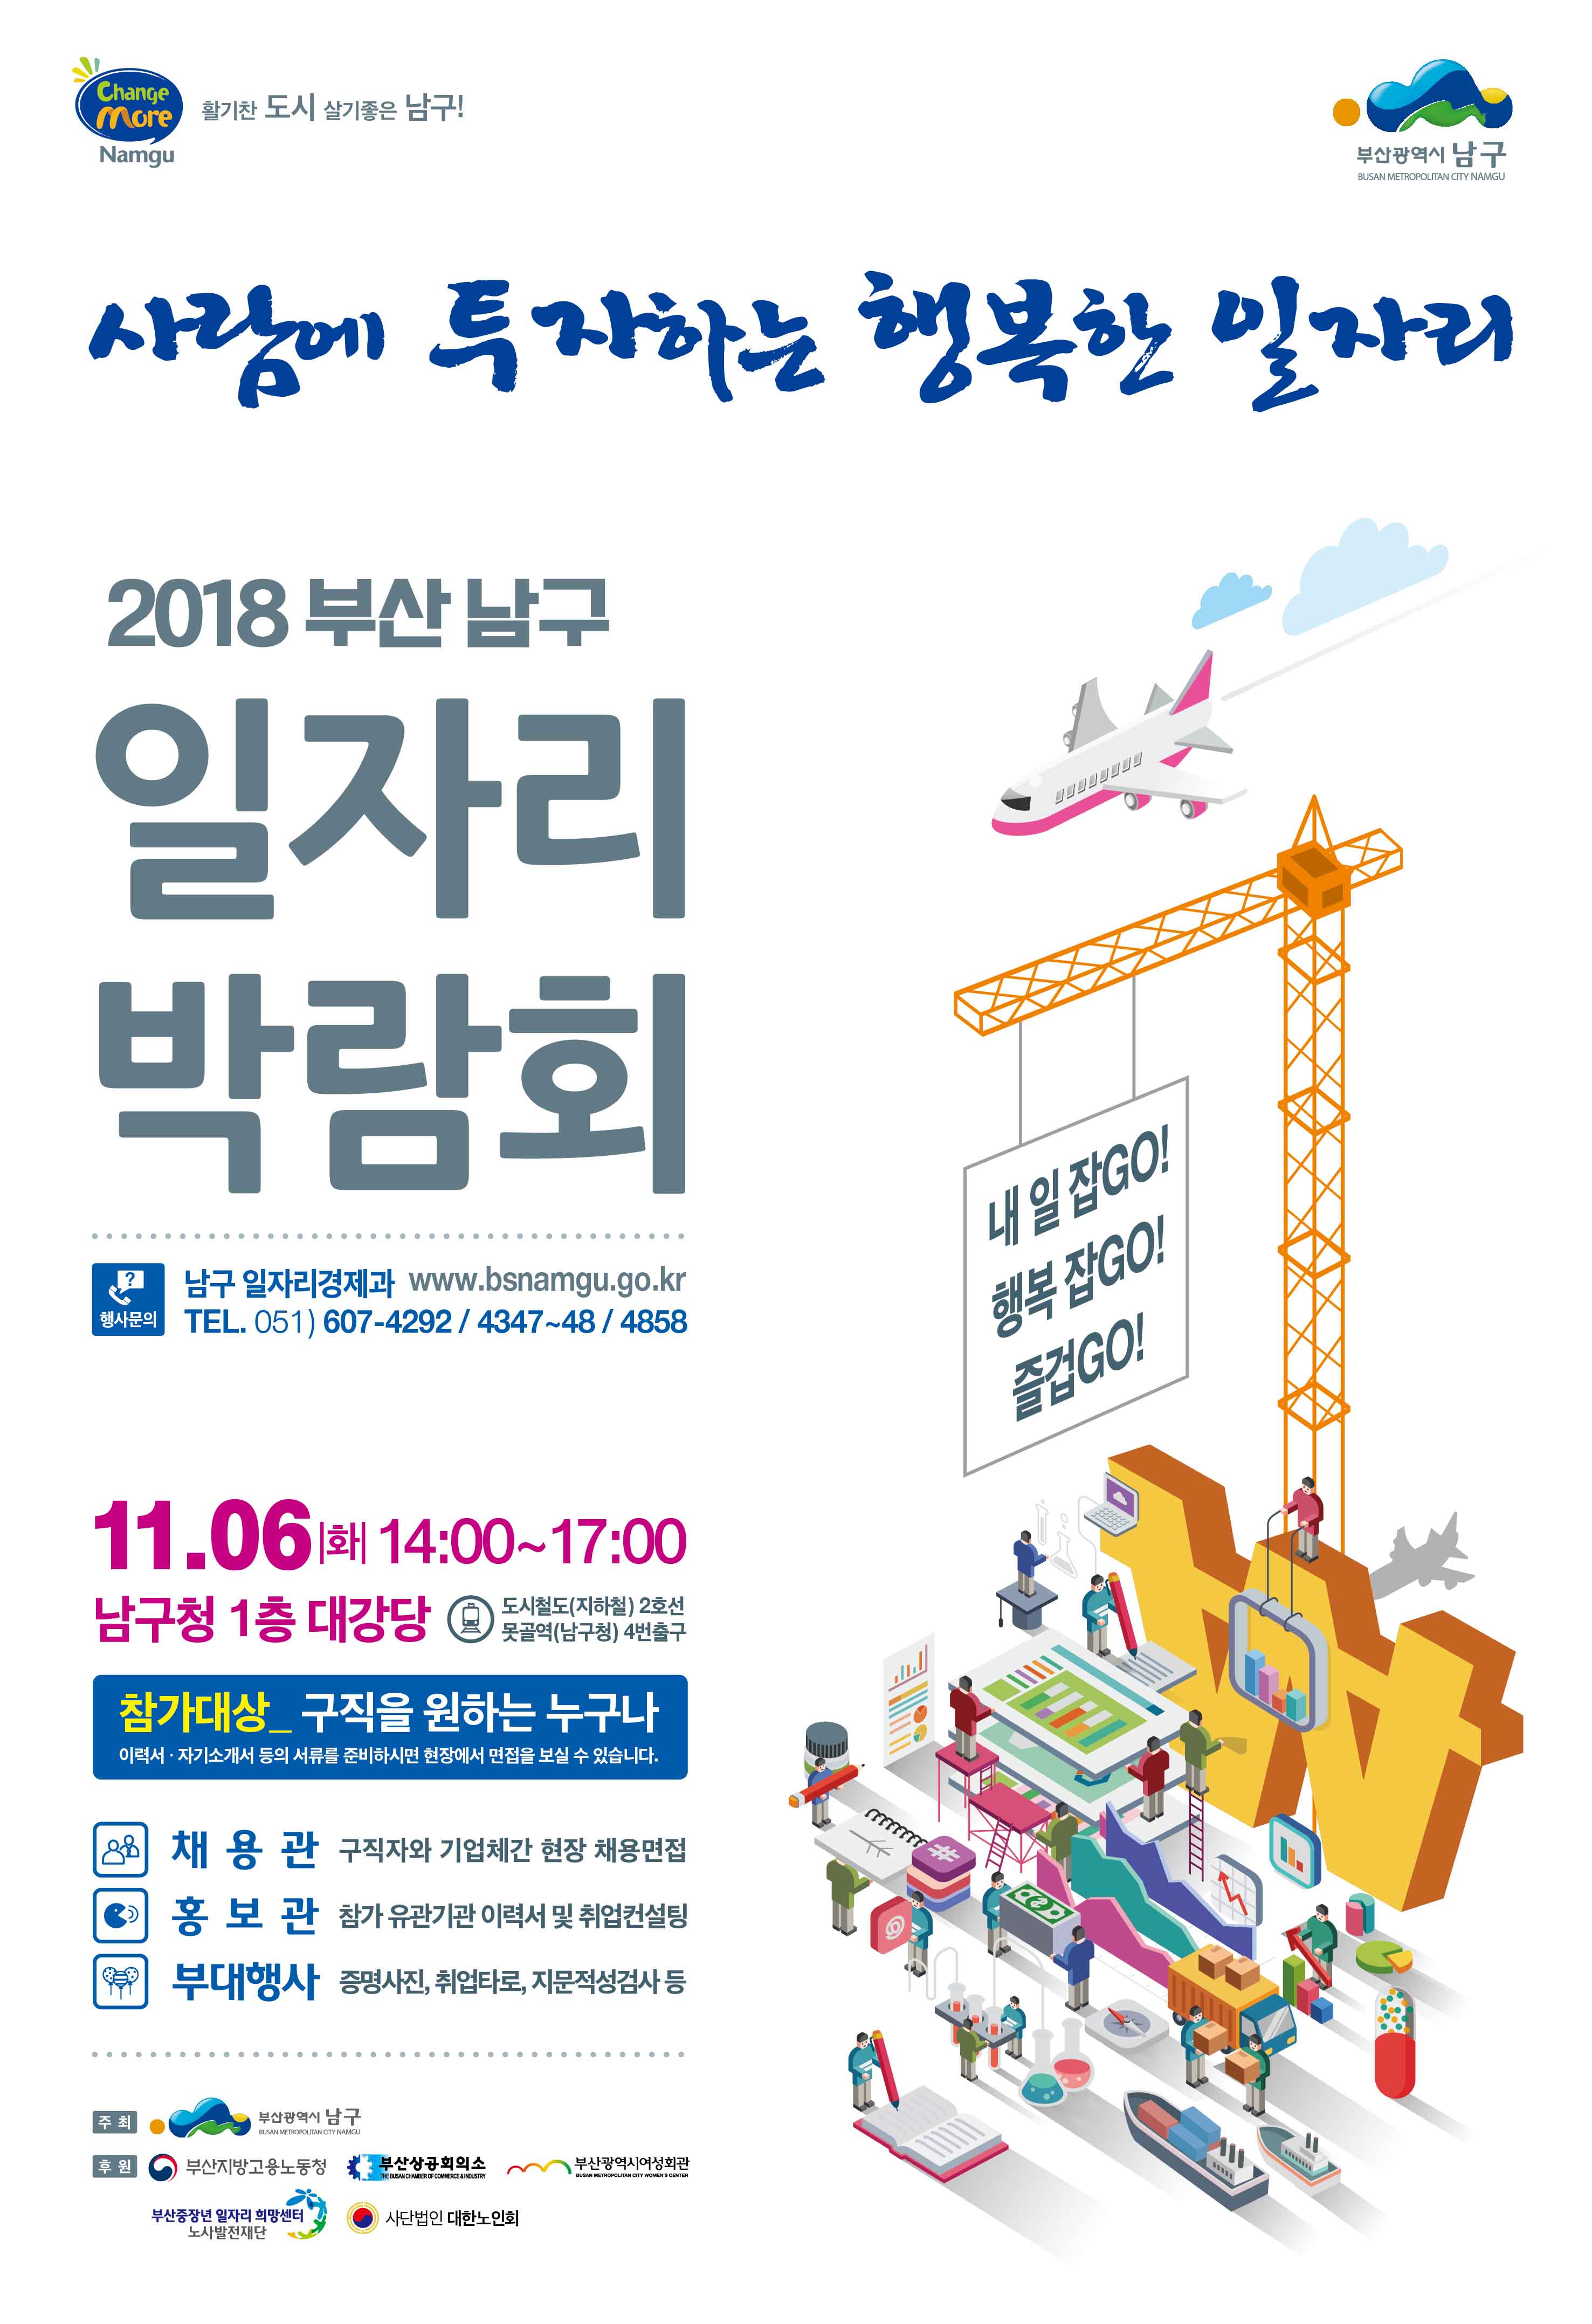 [2018년 남구 일자리] 박람회 개최 알림